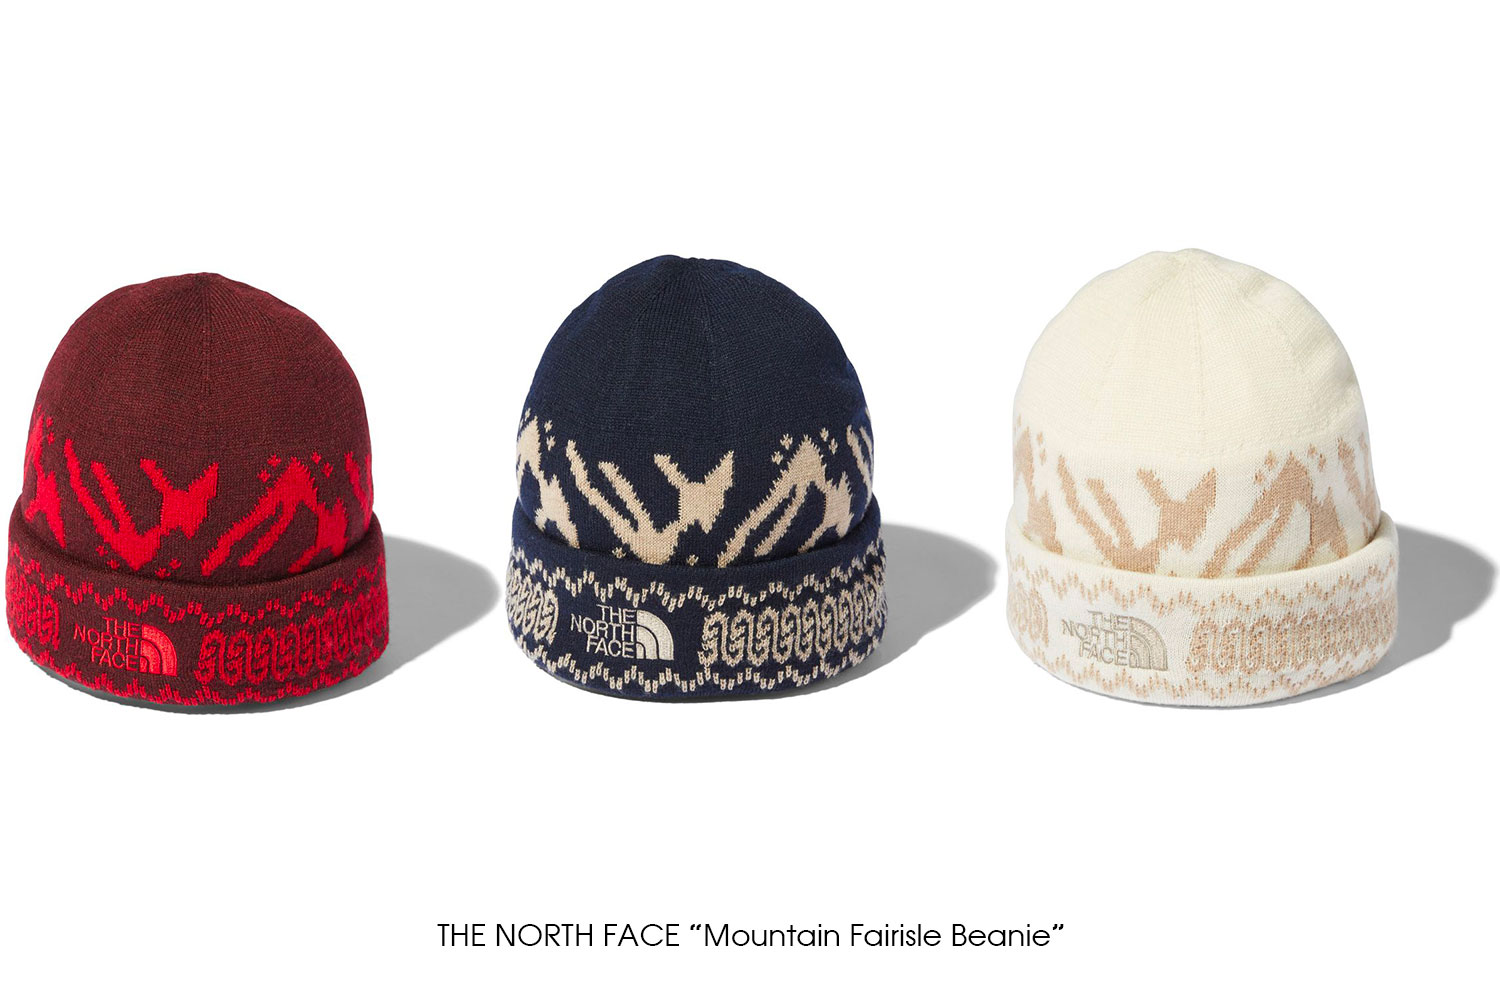 THE NORTH FACE "Mountain Fairisle Beanie"